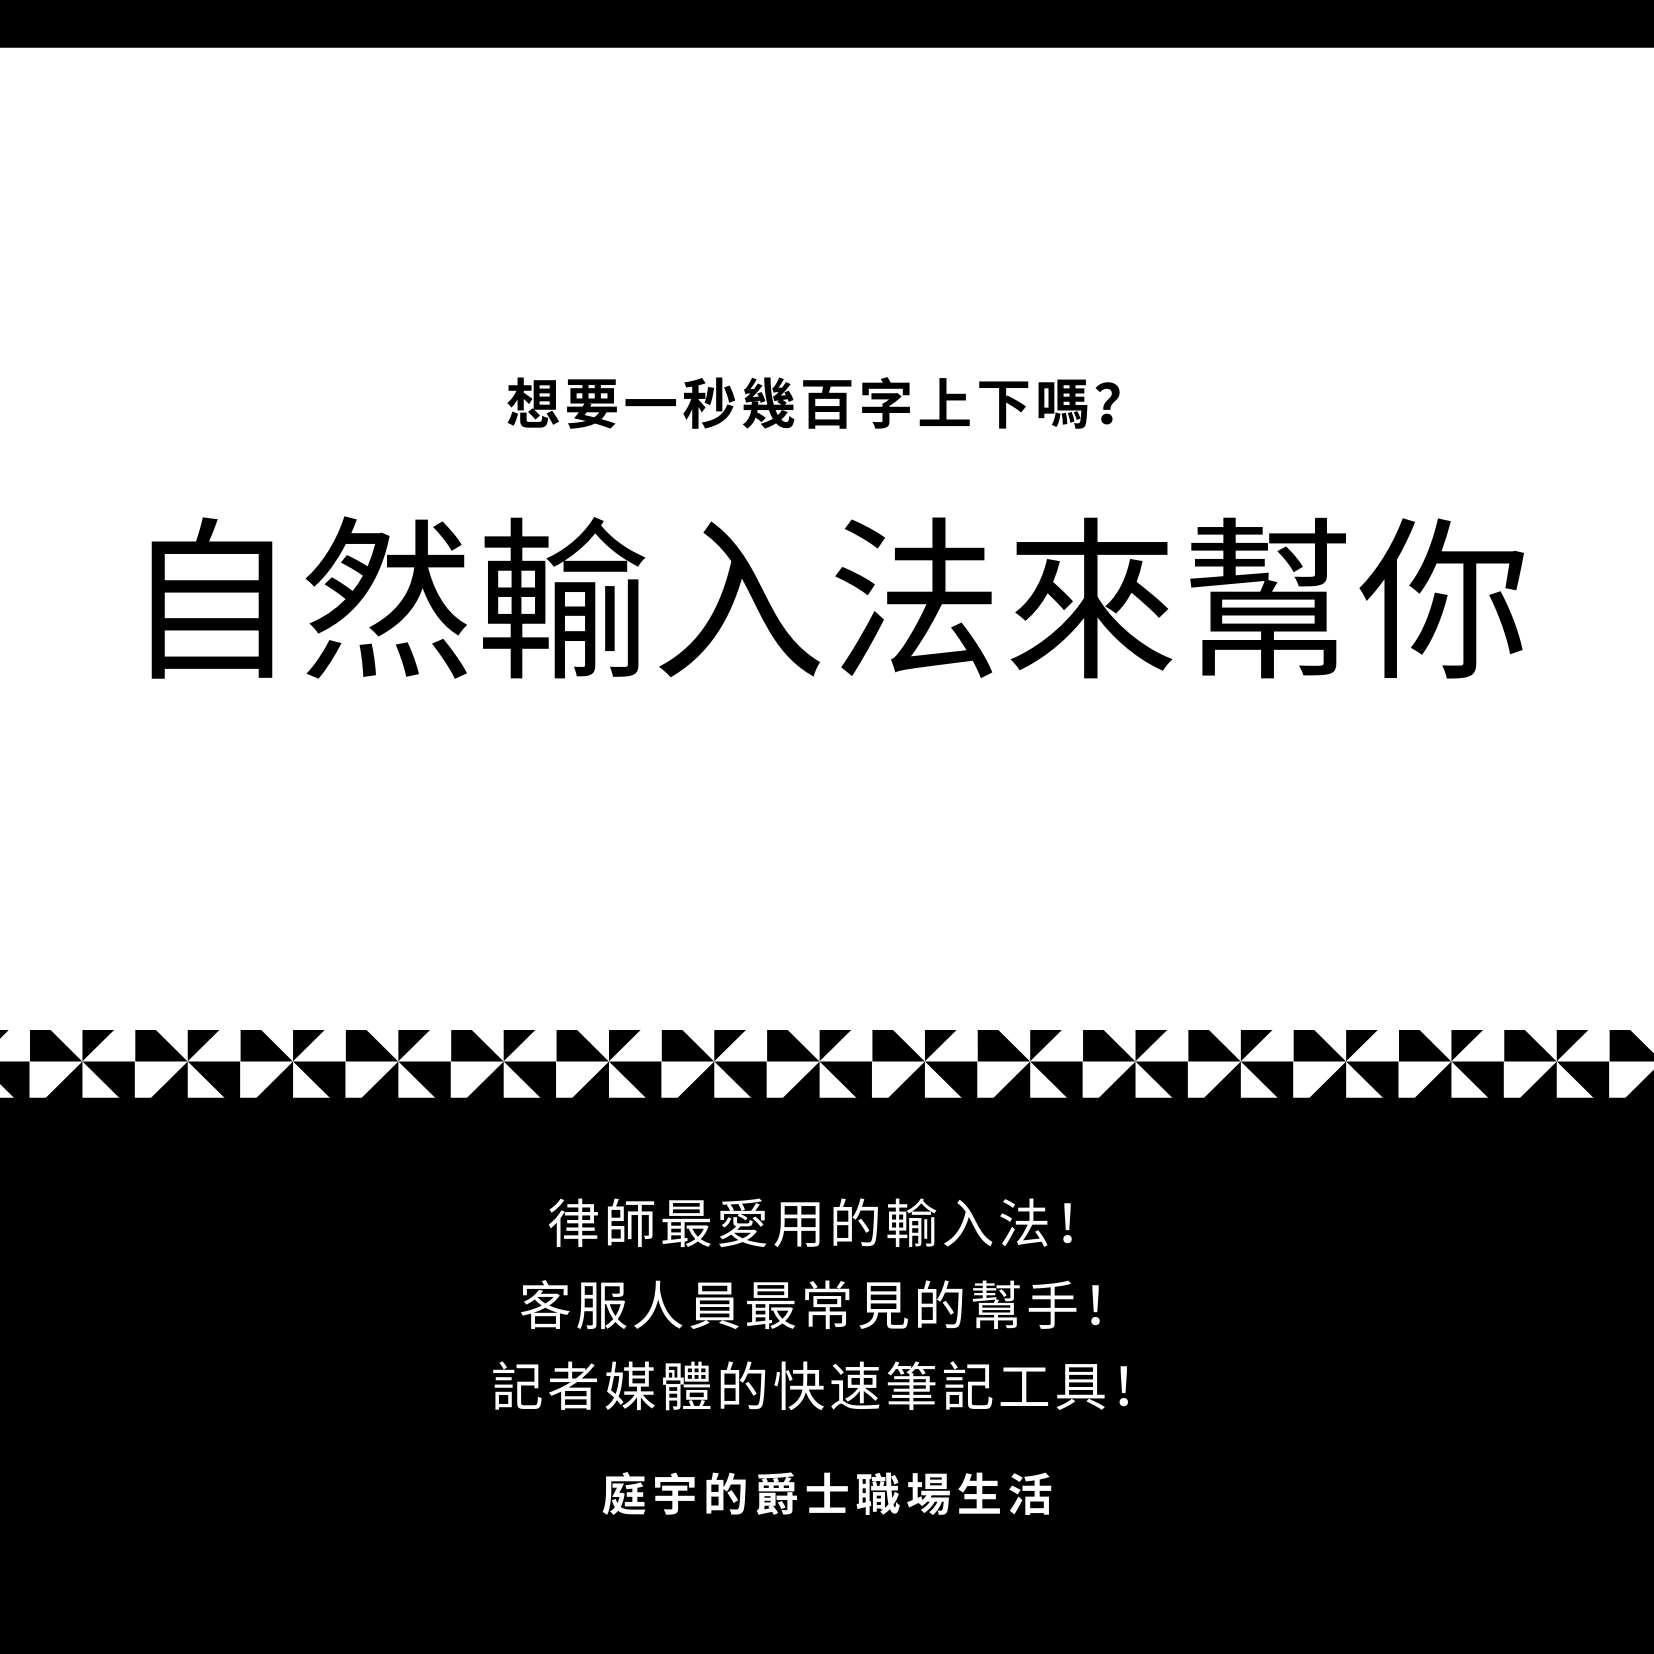 中文輸入法推薦！不得不知的超快輸入法：自然輸入法（內文含輸入法下載）！